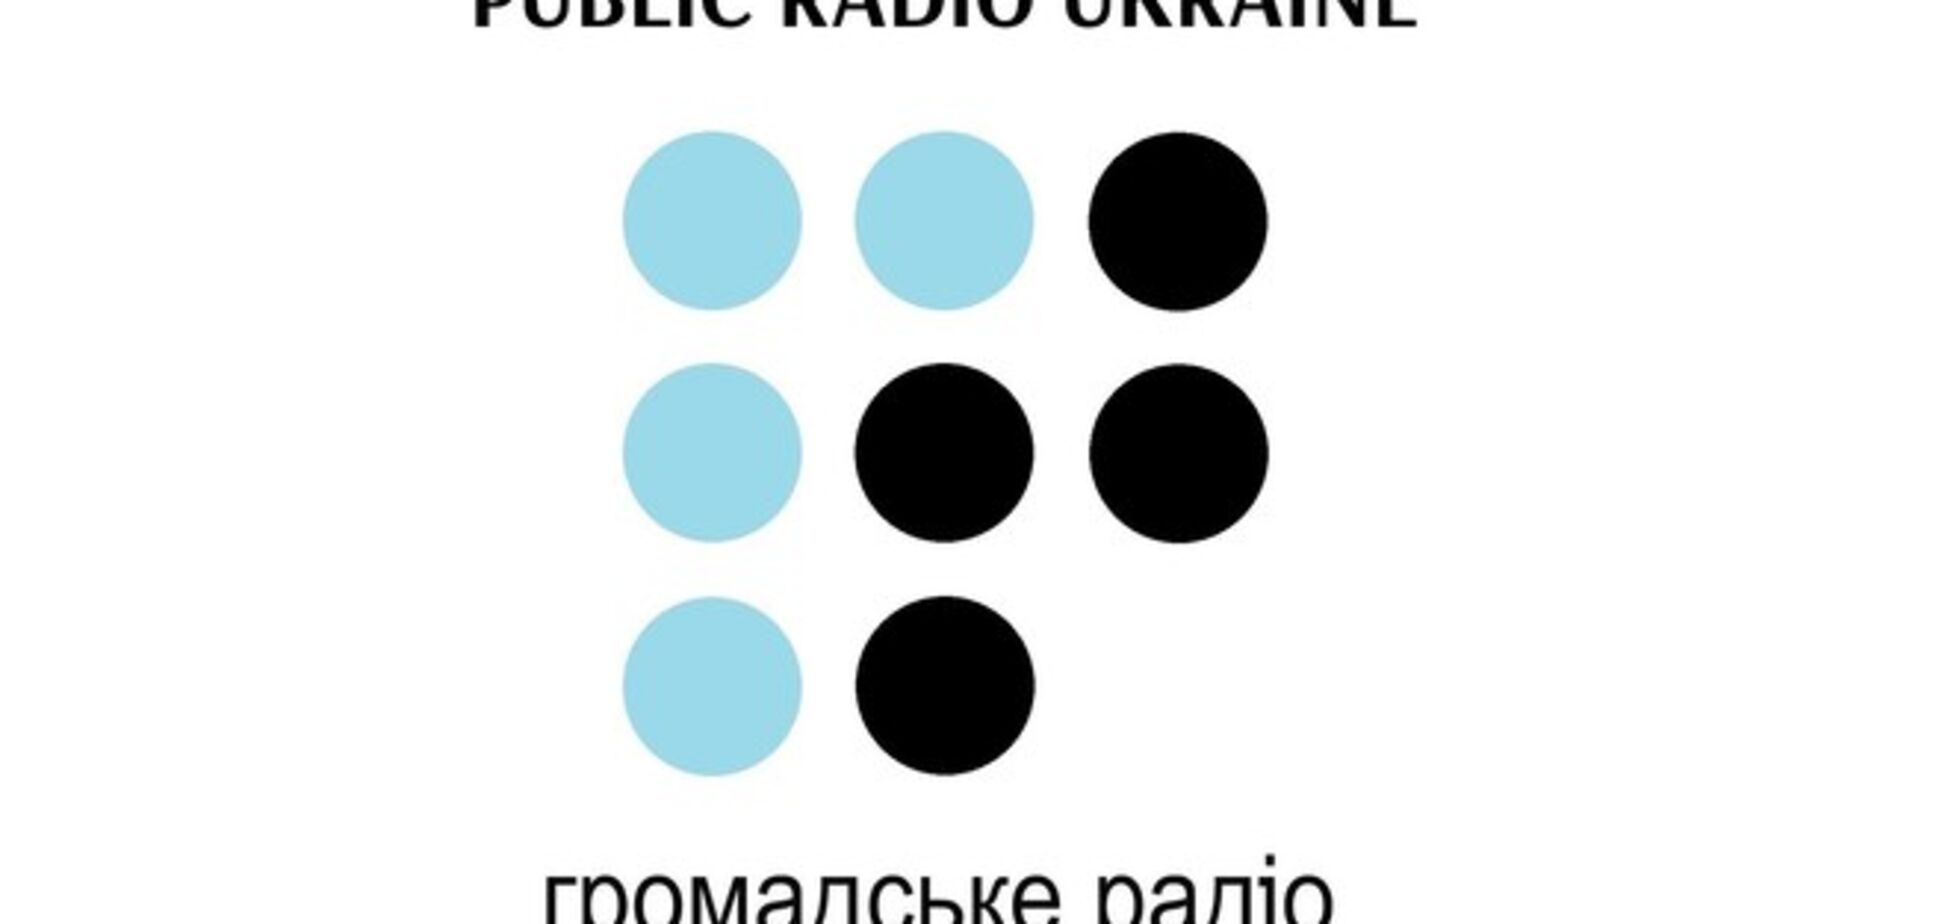 В радиоэфир Донецка вышел первый выпуск 'Громадського'